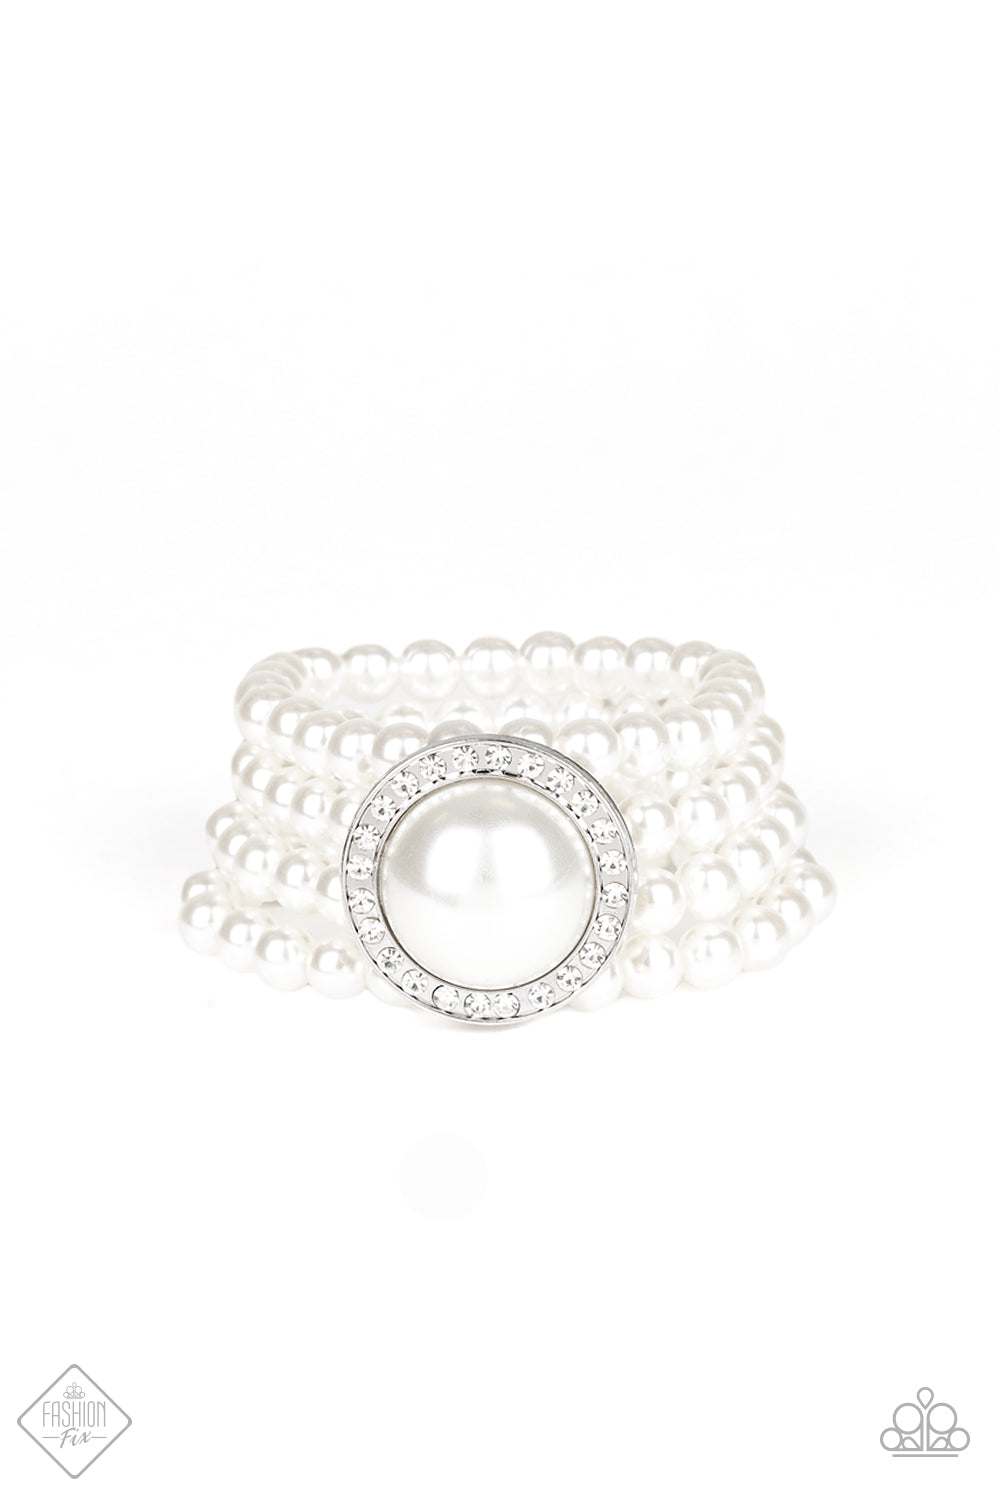 Paparazzi Accessories - Top Tier Twinkle Fashion Fix White Bracelet April 2020